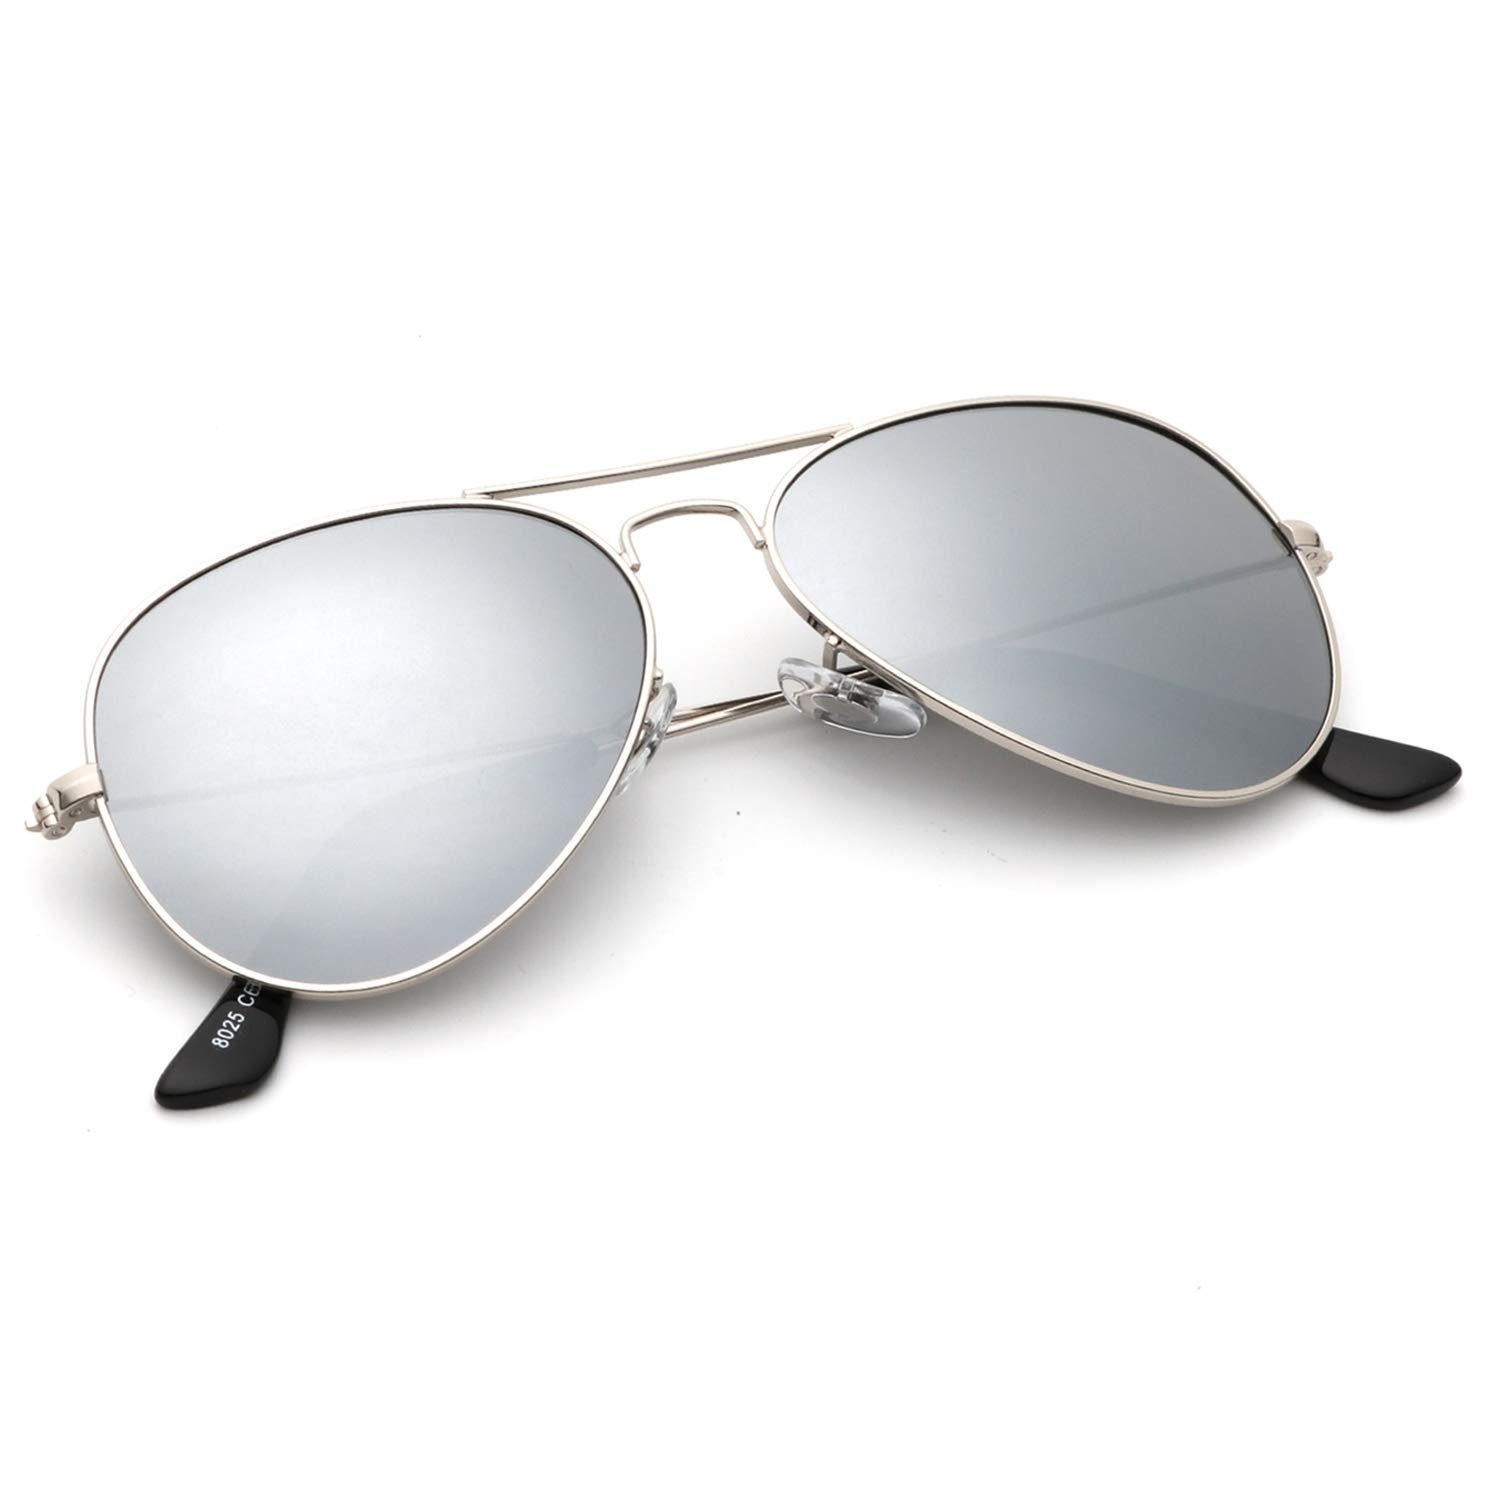 Fine Life Pro Sonnenbrille Cool Polarisierte,UV400 100 % UV-Schutz, für Outdoor-Aktivitäten wie Wandern,Fahren,Angeln,Einkaufen Silber